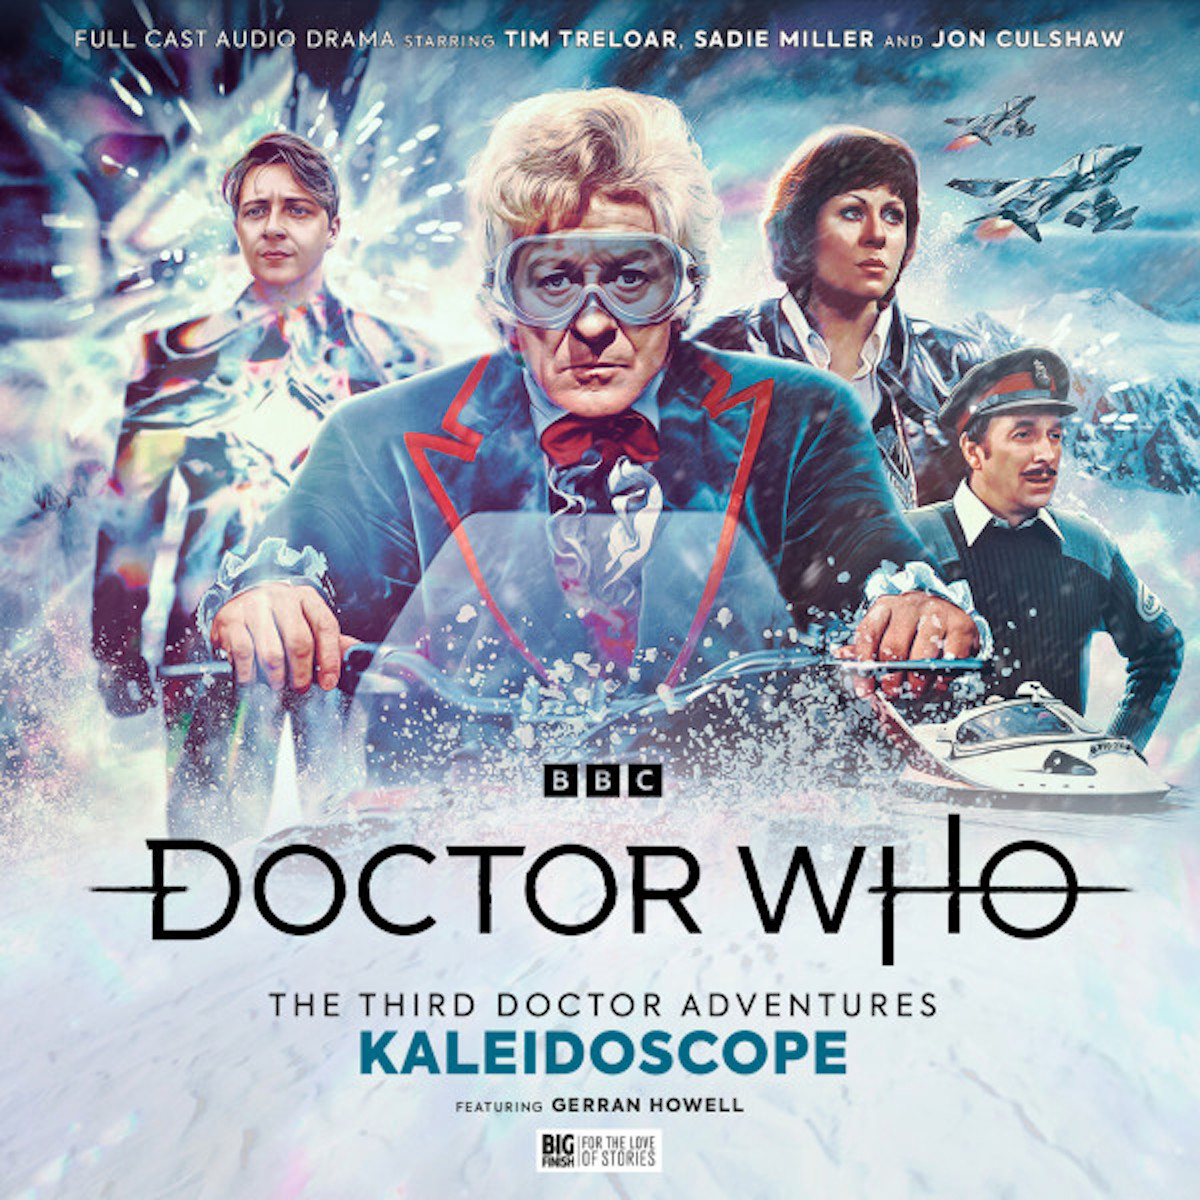 The Third Doctor Adventures: Kaleidoscope